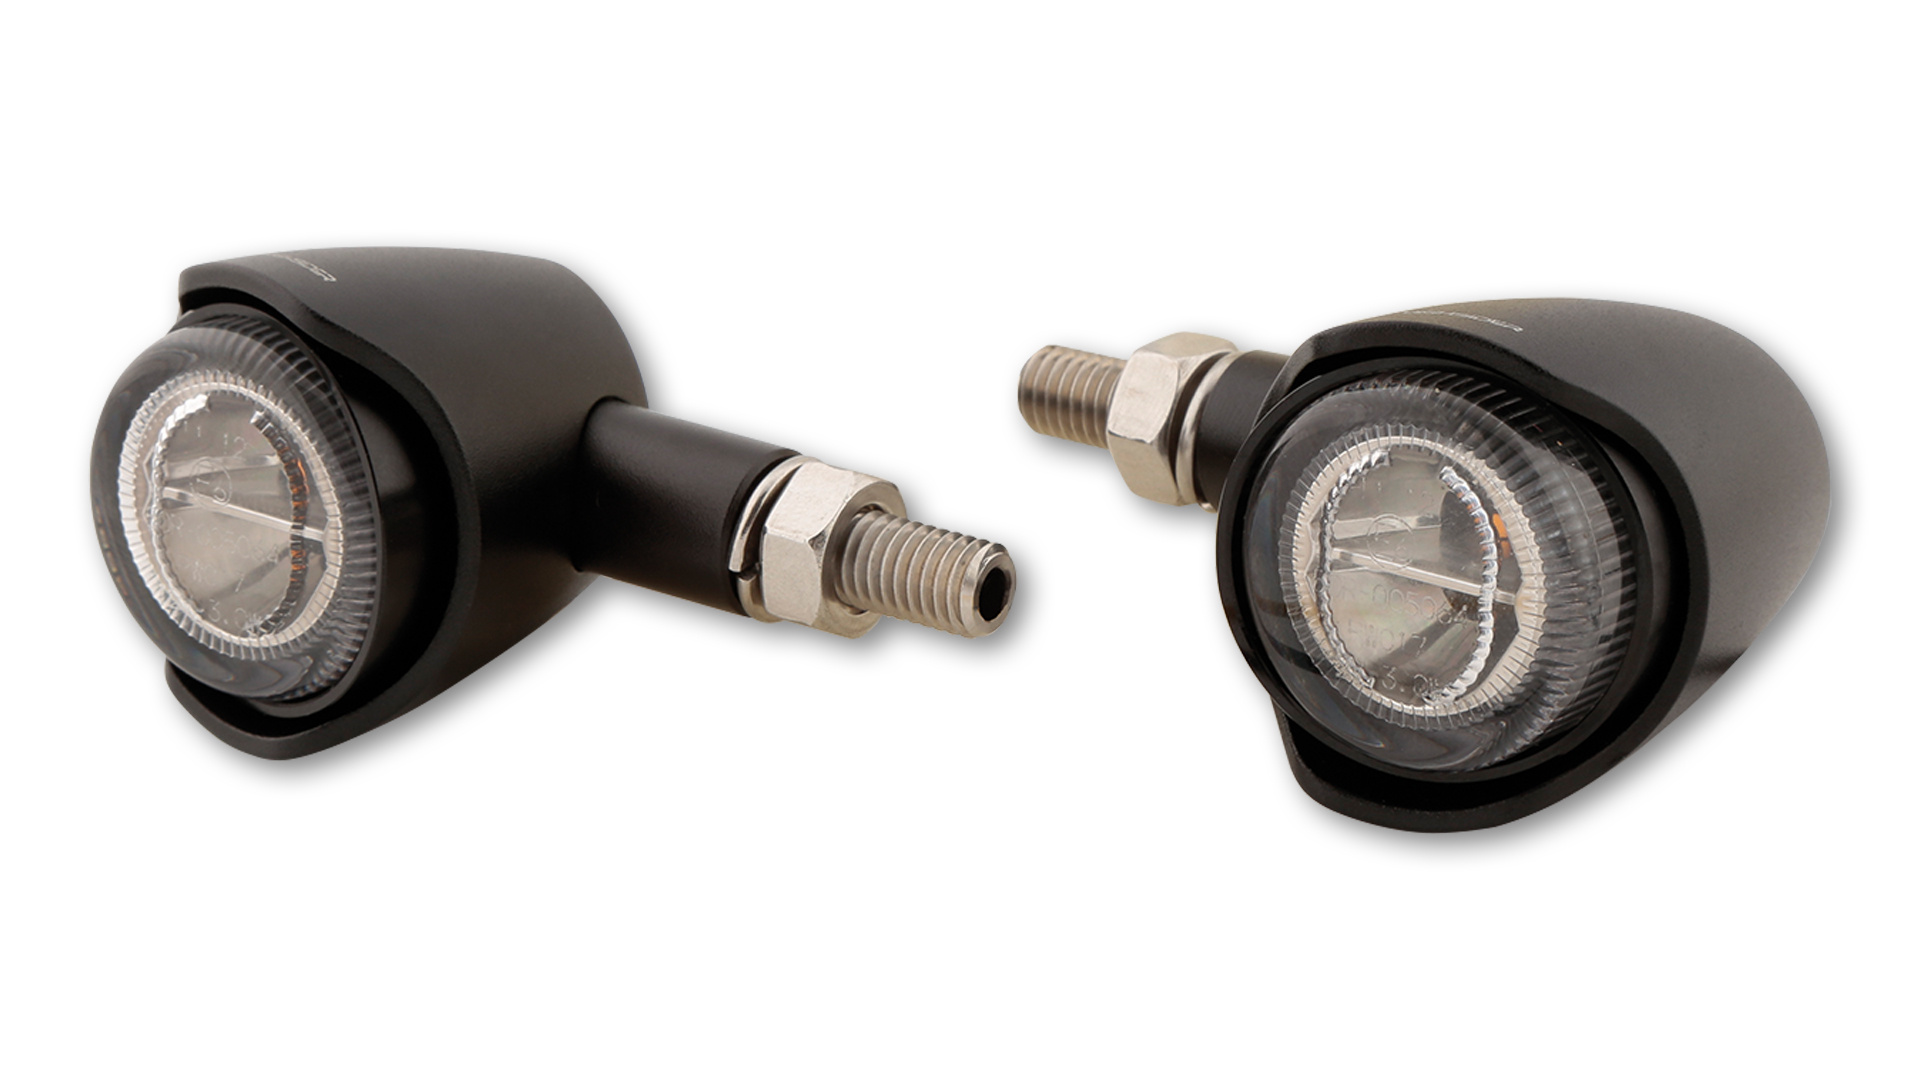 HIGHSIDER AKRON-X LED Rück-, Bremslicht, Blinker, getöntes Glas, in verschiedenen Farben erhältlich, E-geprüft, Paar.